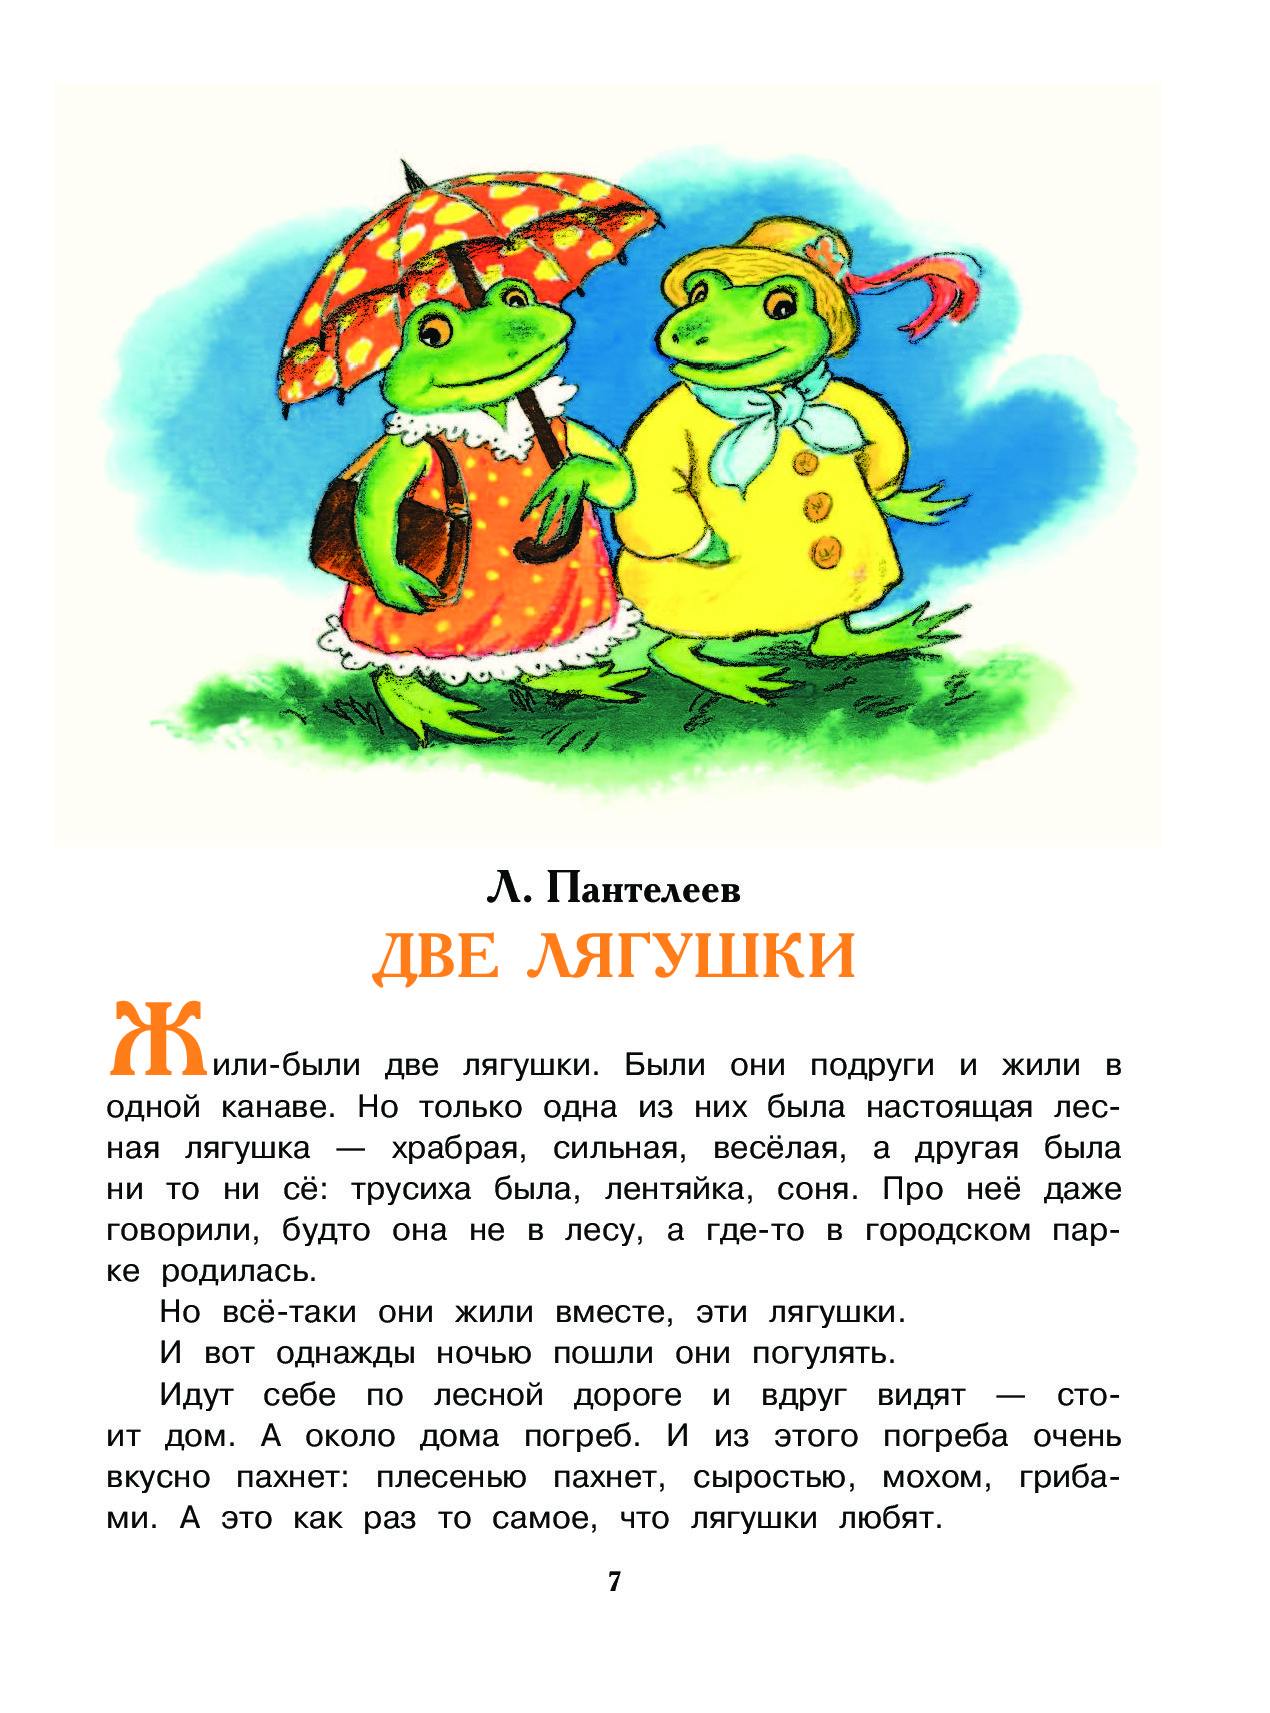 Пантелеев алексей сказка «две лягушки»